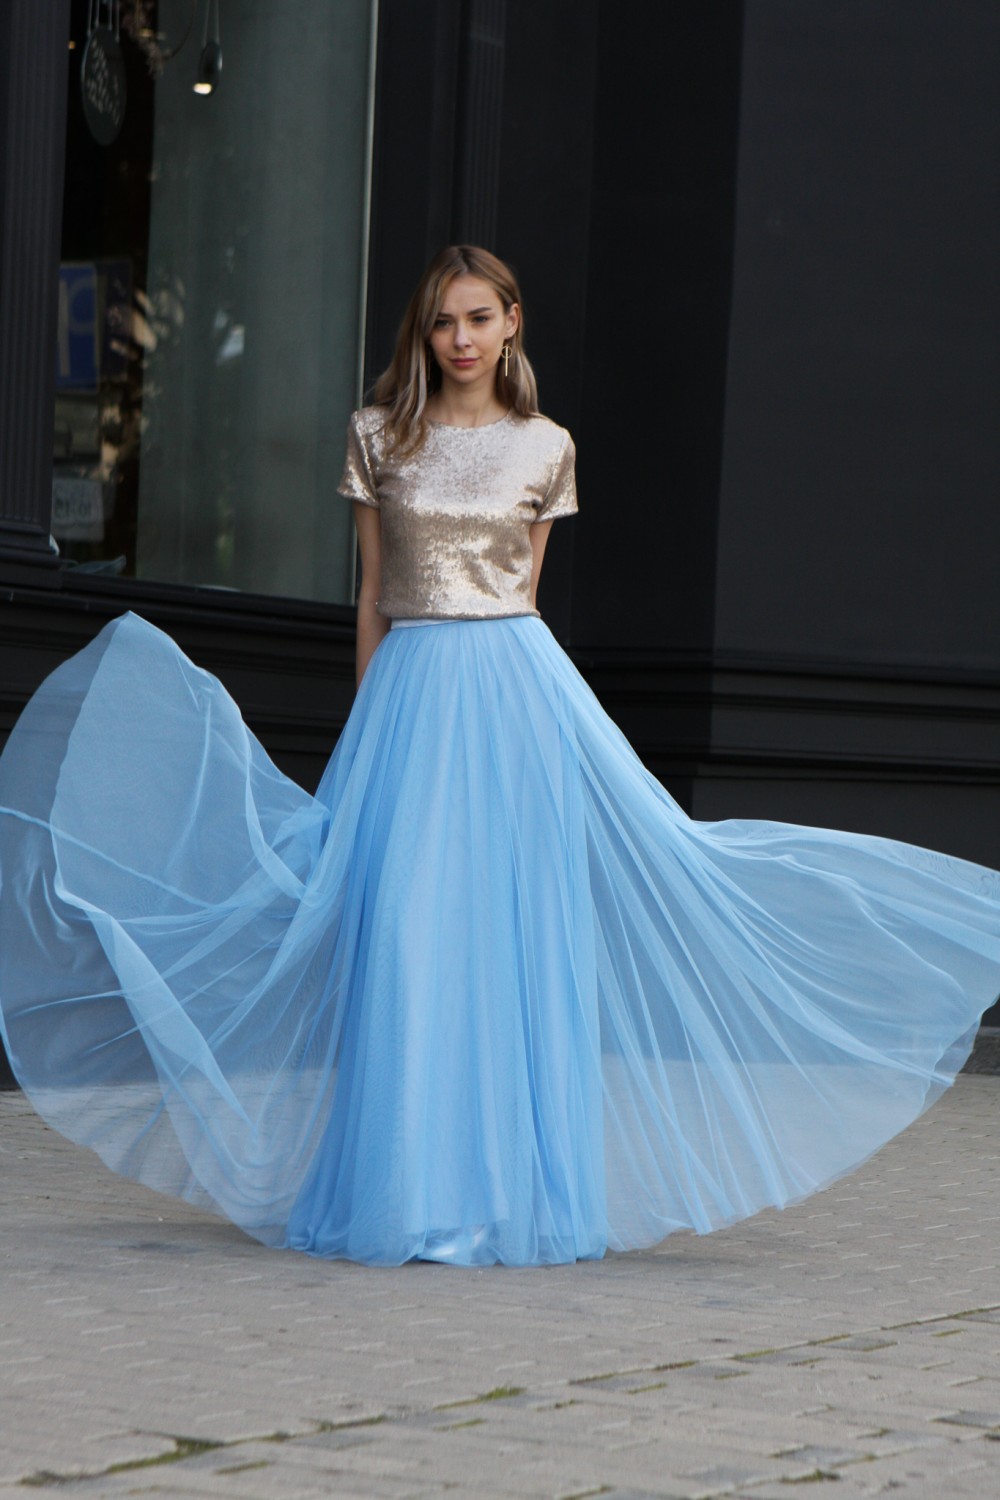 Купить Непышная юбка-солнце в пол голубая в Новосибирске в ШоуРуме платьевпо выгодной цене